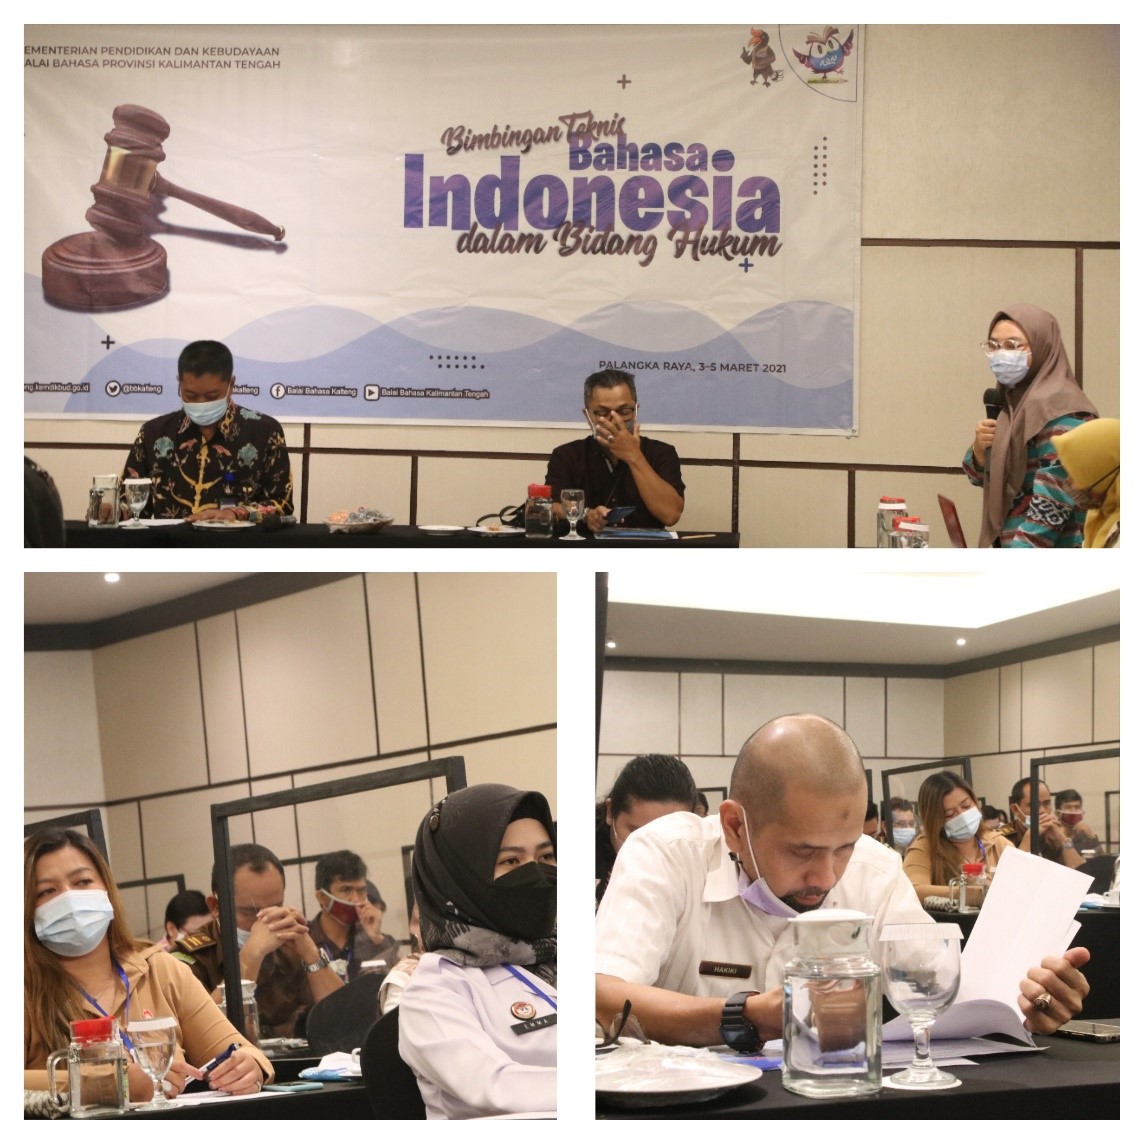 Upaya Pemartabatan Bahasa Indonesia dalam Bidang Hukum 2021 di Palangkaraya